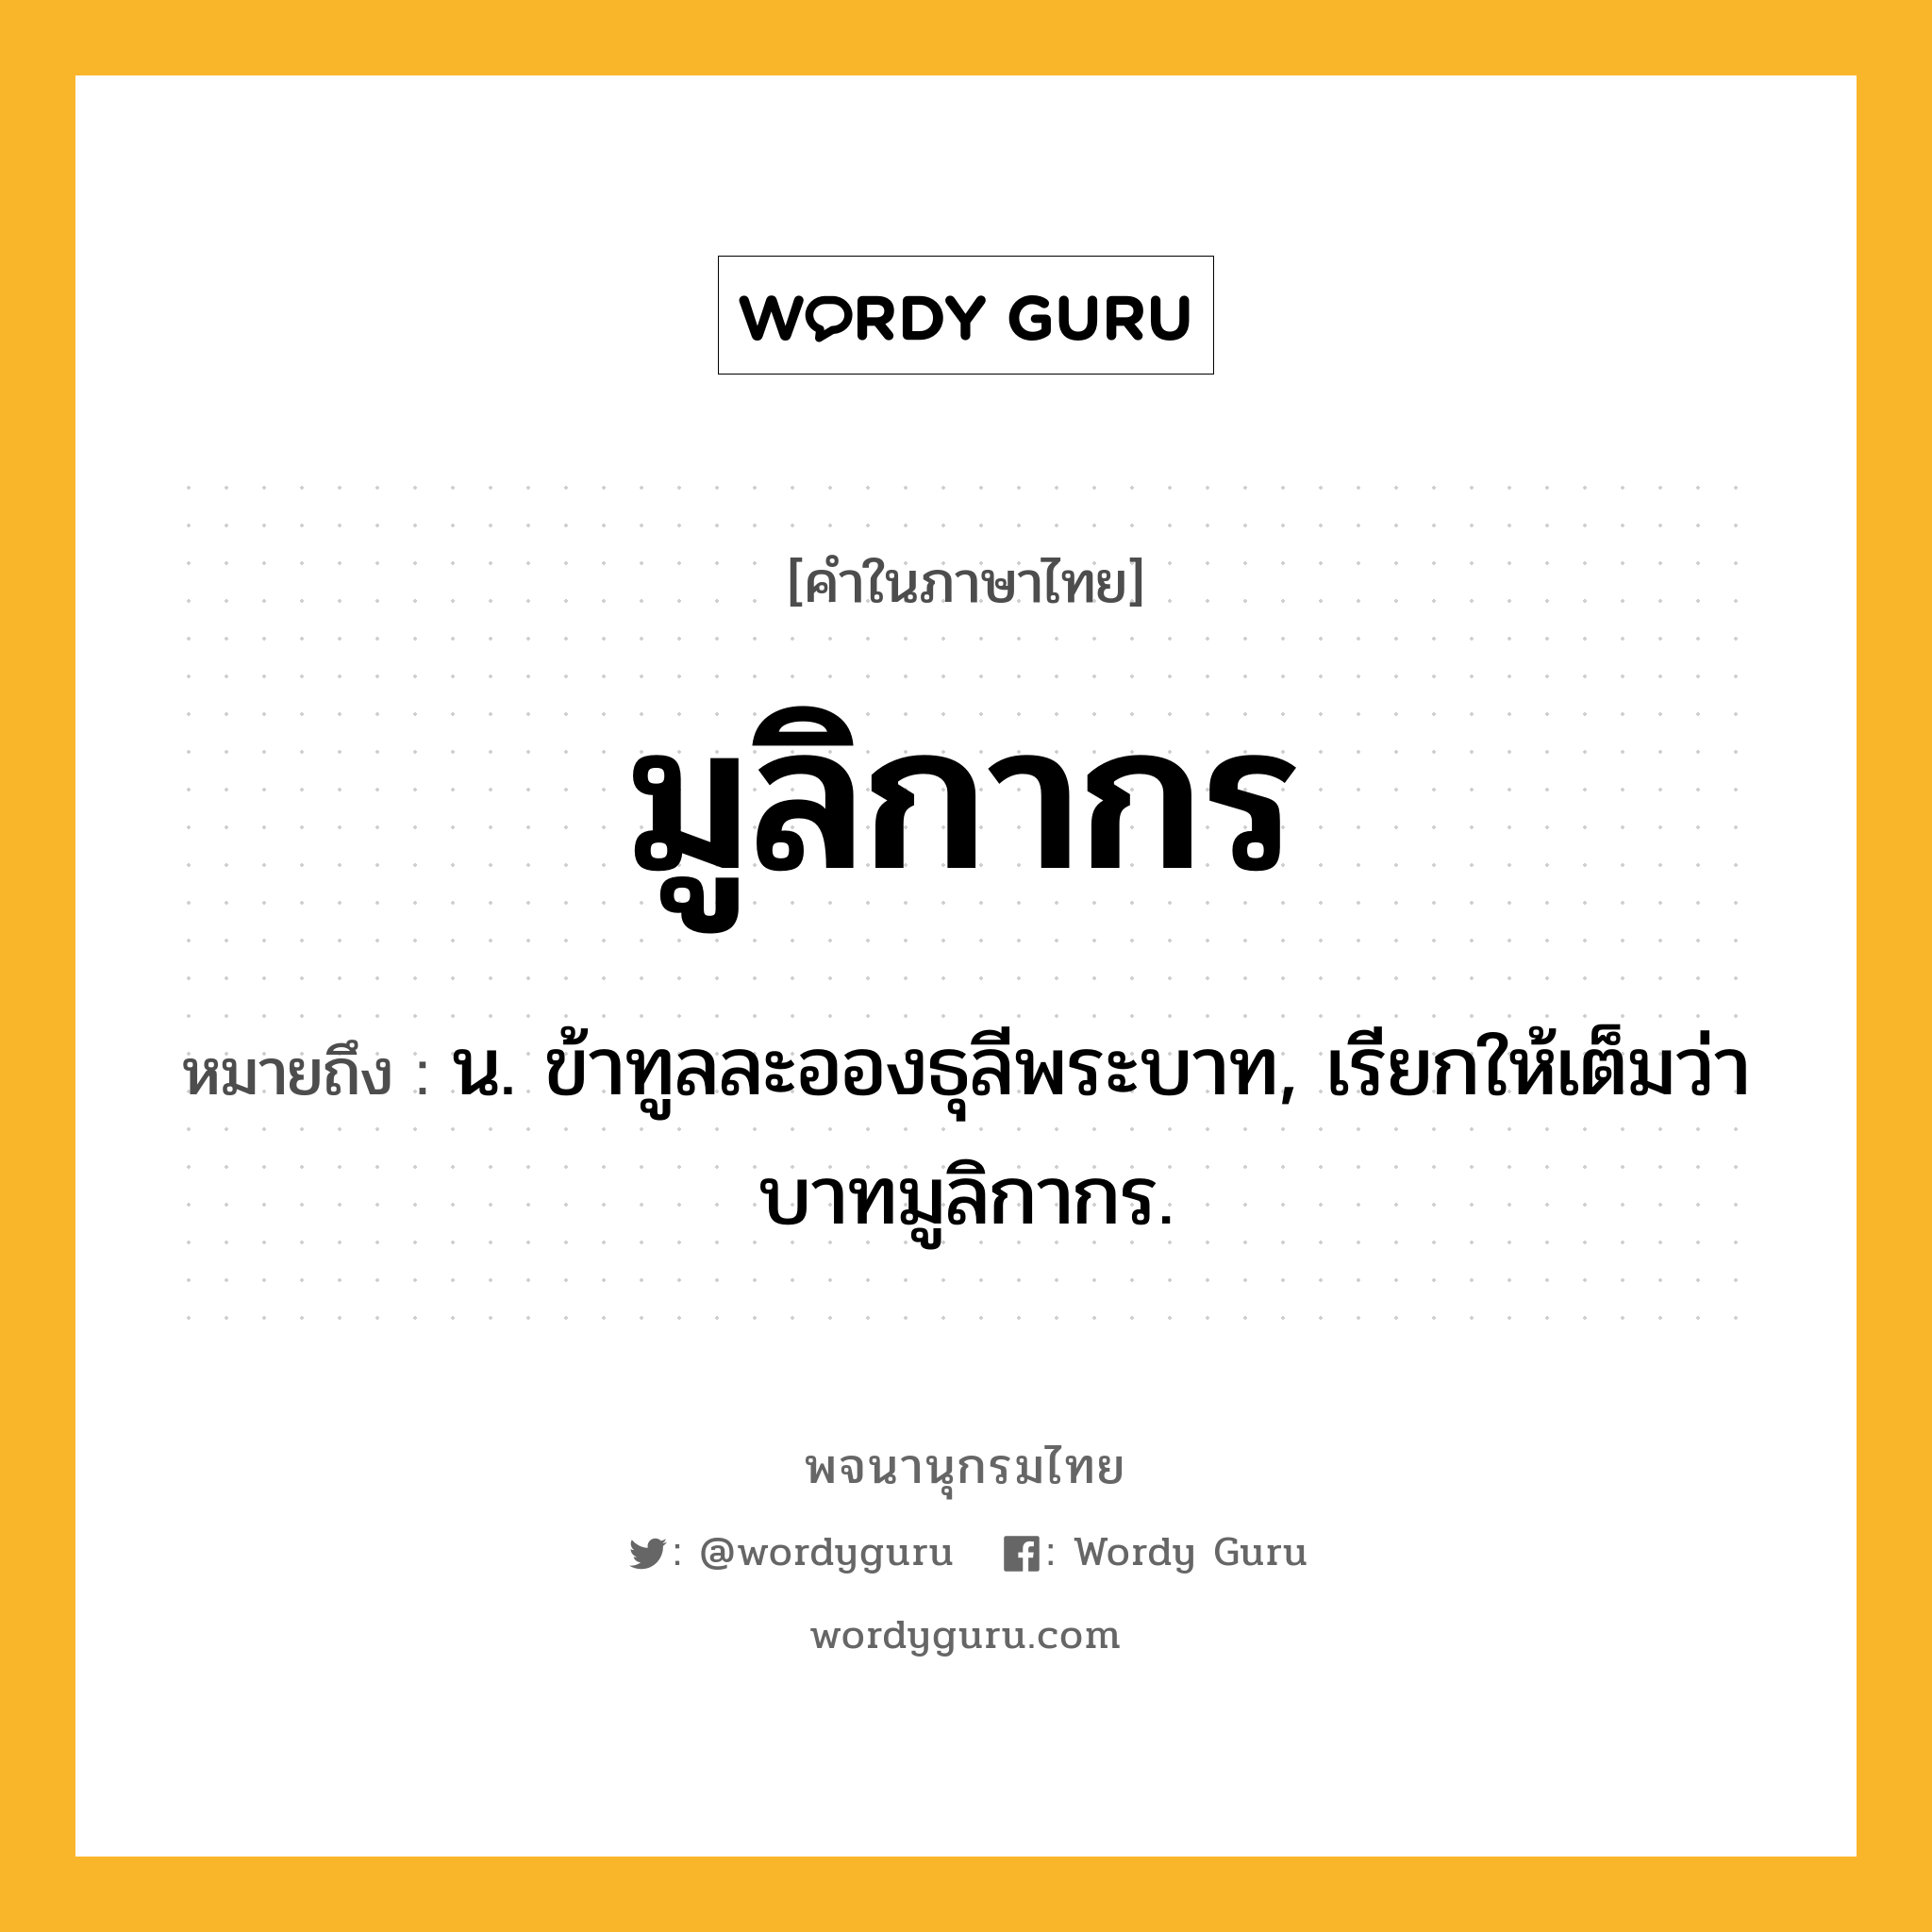 มูลิกากร ความหมาย หมายถึงอะไร?, คำในภาษาไทย มูลิกากร หมายถึง น. ข้าทูลละอองธุลีพระบาท, เรียกให้เต็มว่า บาทมูลิกากร.